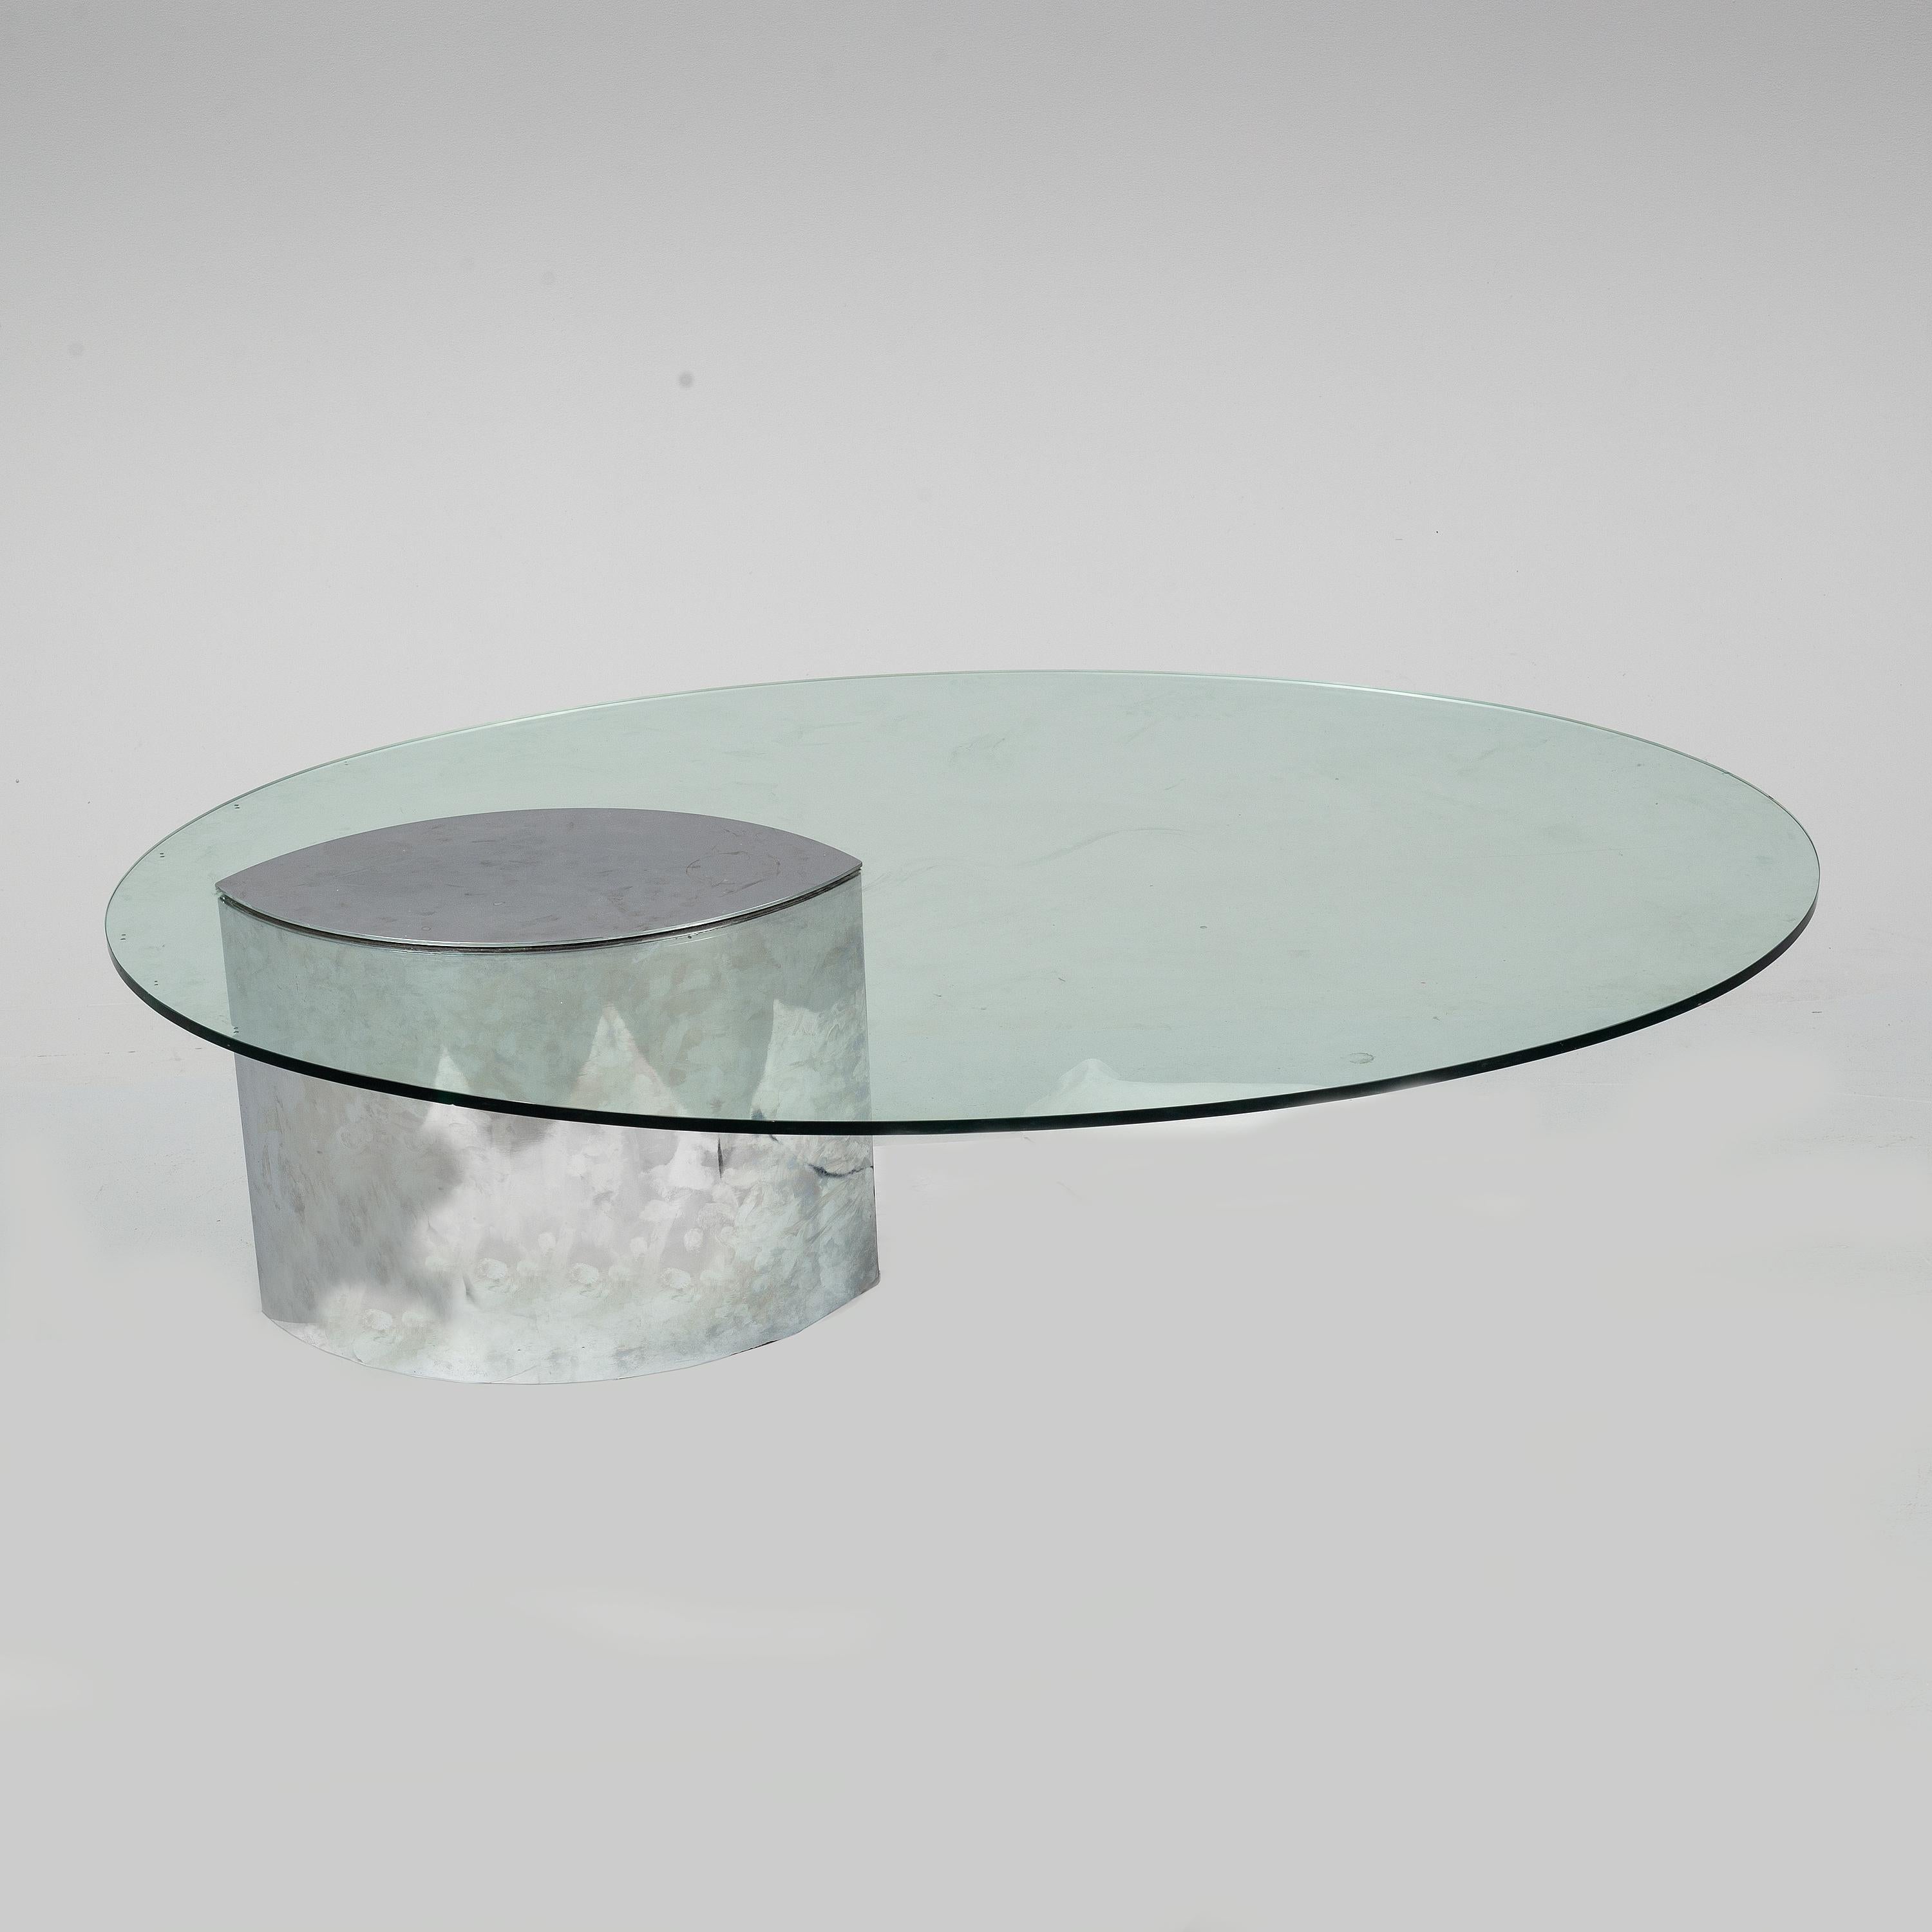 La mesa de centro Lunario de Knoll International tiene una placa de cristal ovalada y una base de metal. Se caracteriza por su aspecto asimétrico y su diseño sencillo y atemporal.

Estado vintage 

Pequeña pérdida de cromo en el borde superior de la